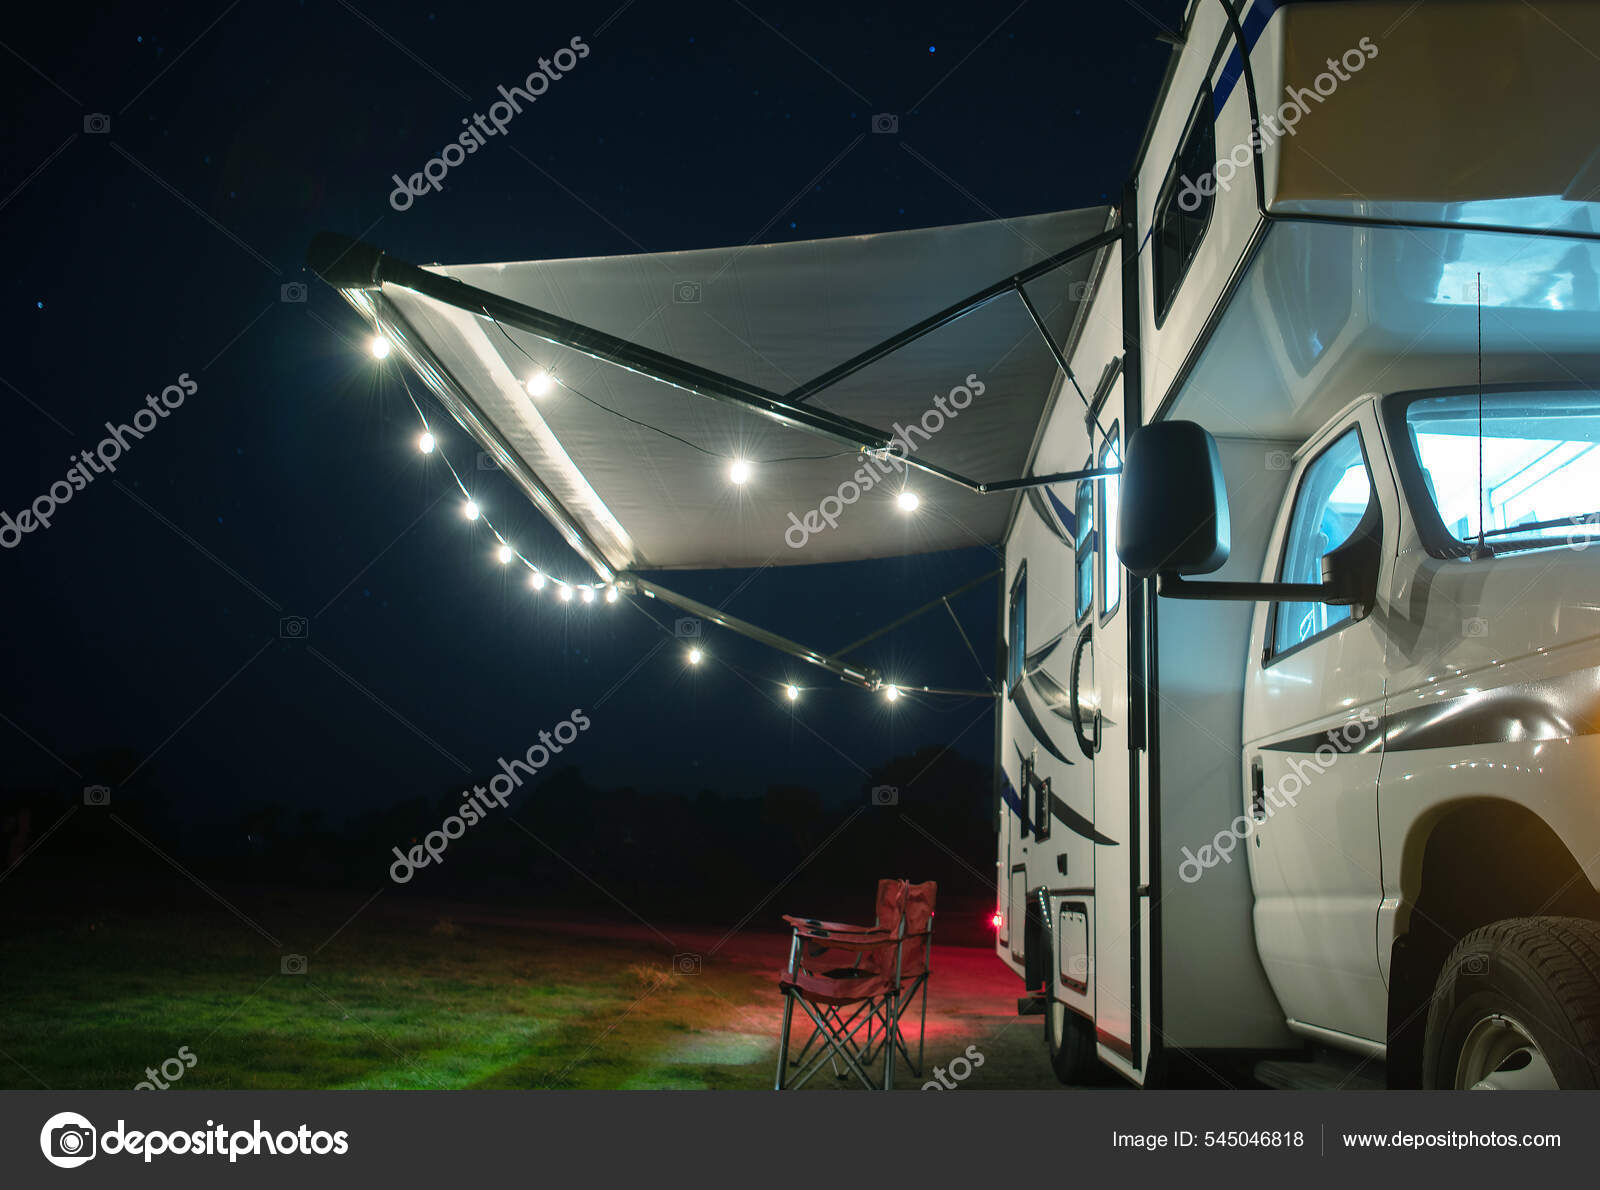 Camper awning lights